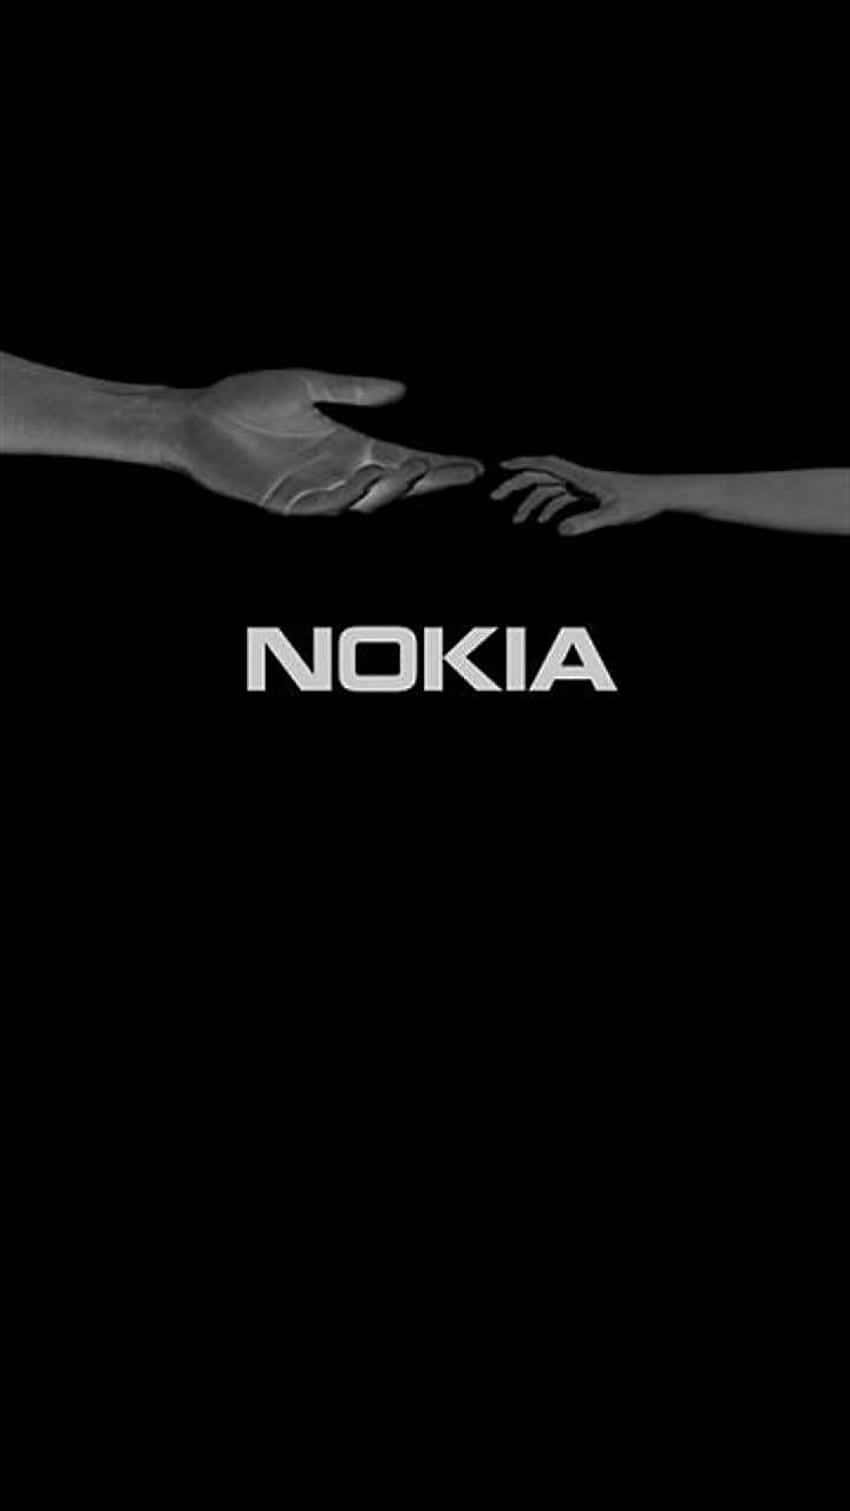 Holddig Forbundet Med Nokia 850.